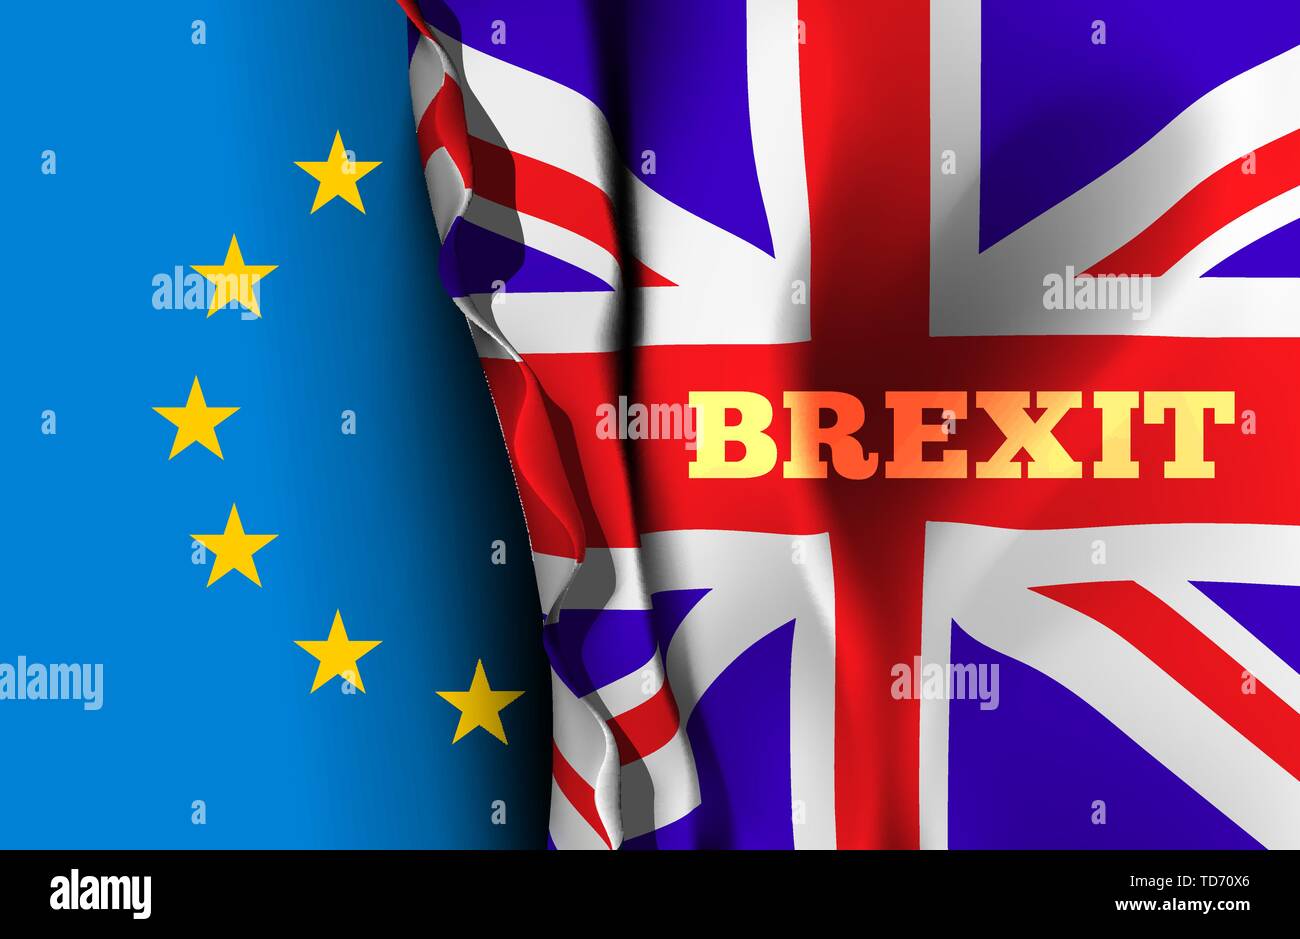 Brexit, nehmen Sie die Ausfahrt von Großbritannien aus der Europäischen Union. Vector Illustration mit Flaggen der EU und UK Stock Vektor